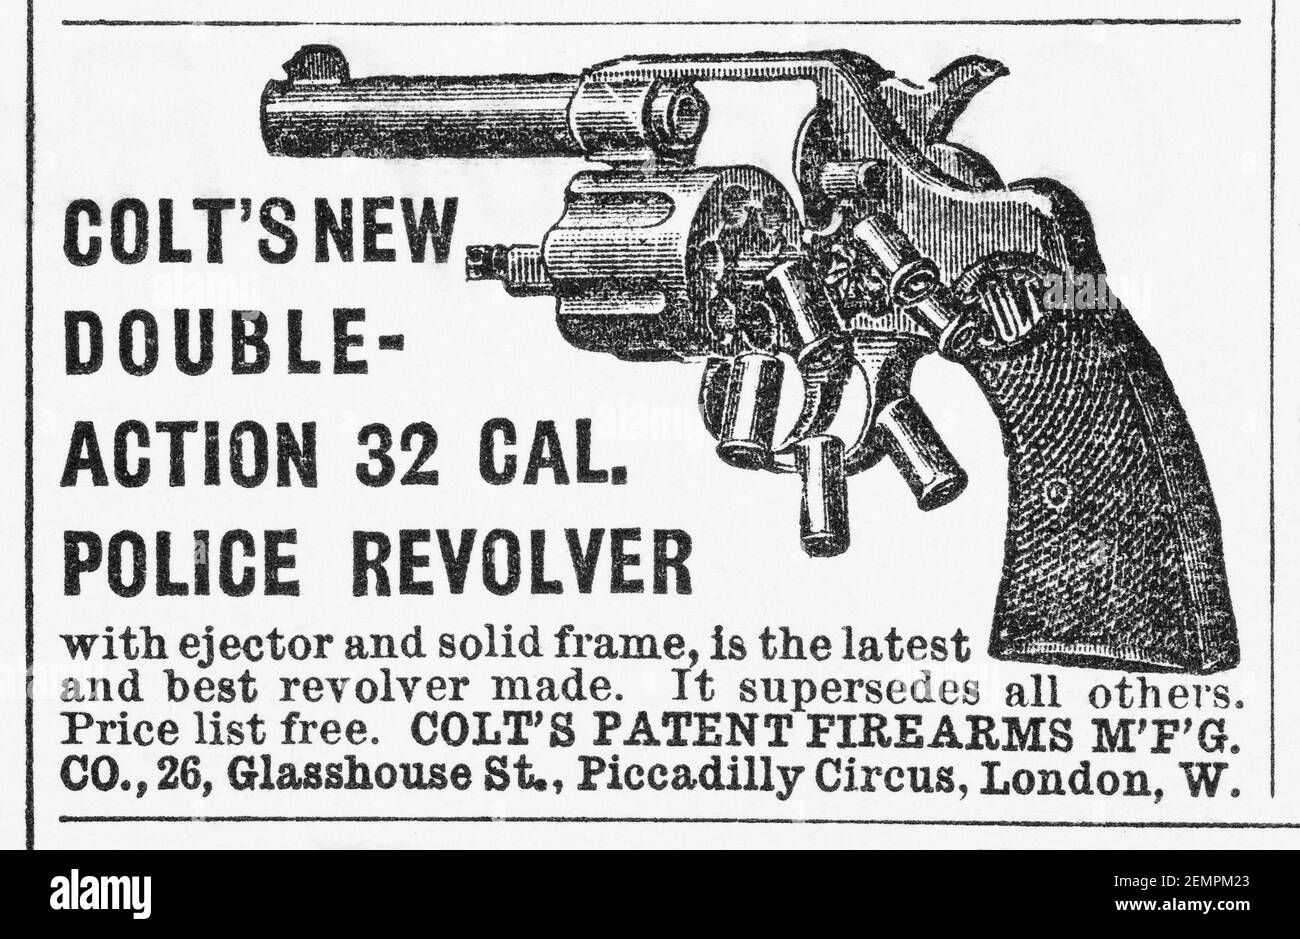 Antiguo anuncio de armas de fuego de Colt en el Reino Unido de 1897 - antes de los albores de los estándares de publicidad y cuando las armas de fuego fácilmente disponibles. Historia de la publicidad, viejos anuncios. Foto de stock